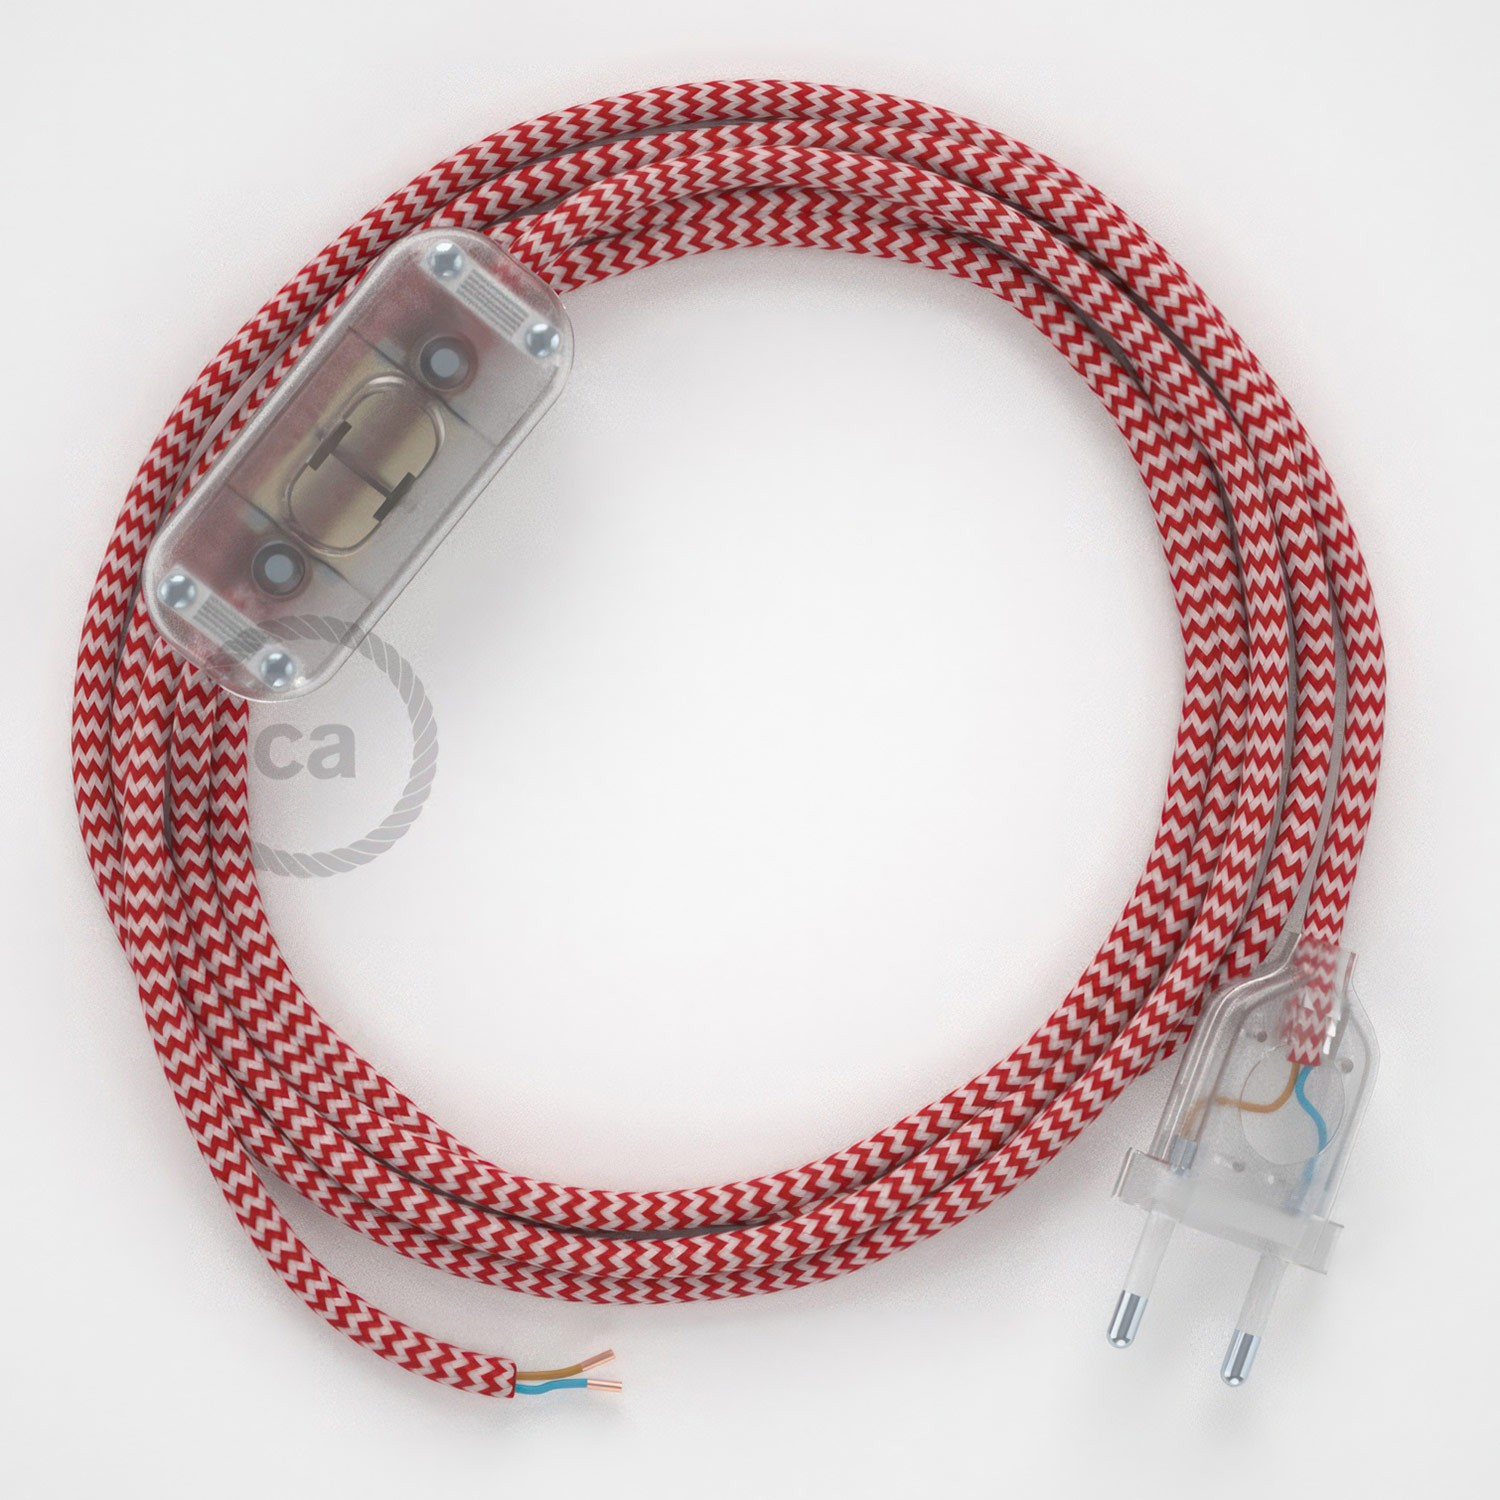 Cableado para lámpara, cable RZ09 Efecto Seda ZigZag Blanco Rojo 1,8m. Elige tu el color de la clavija y del interruptor!